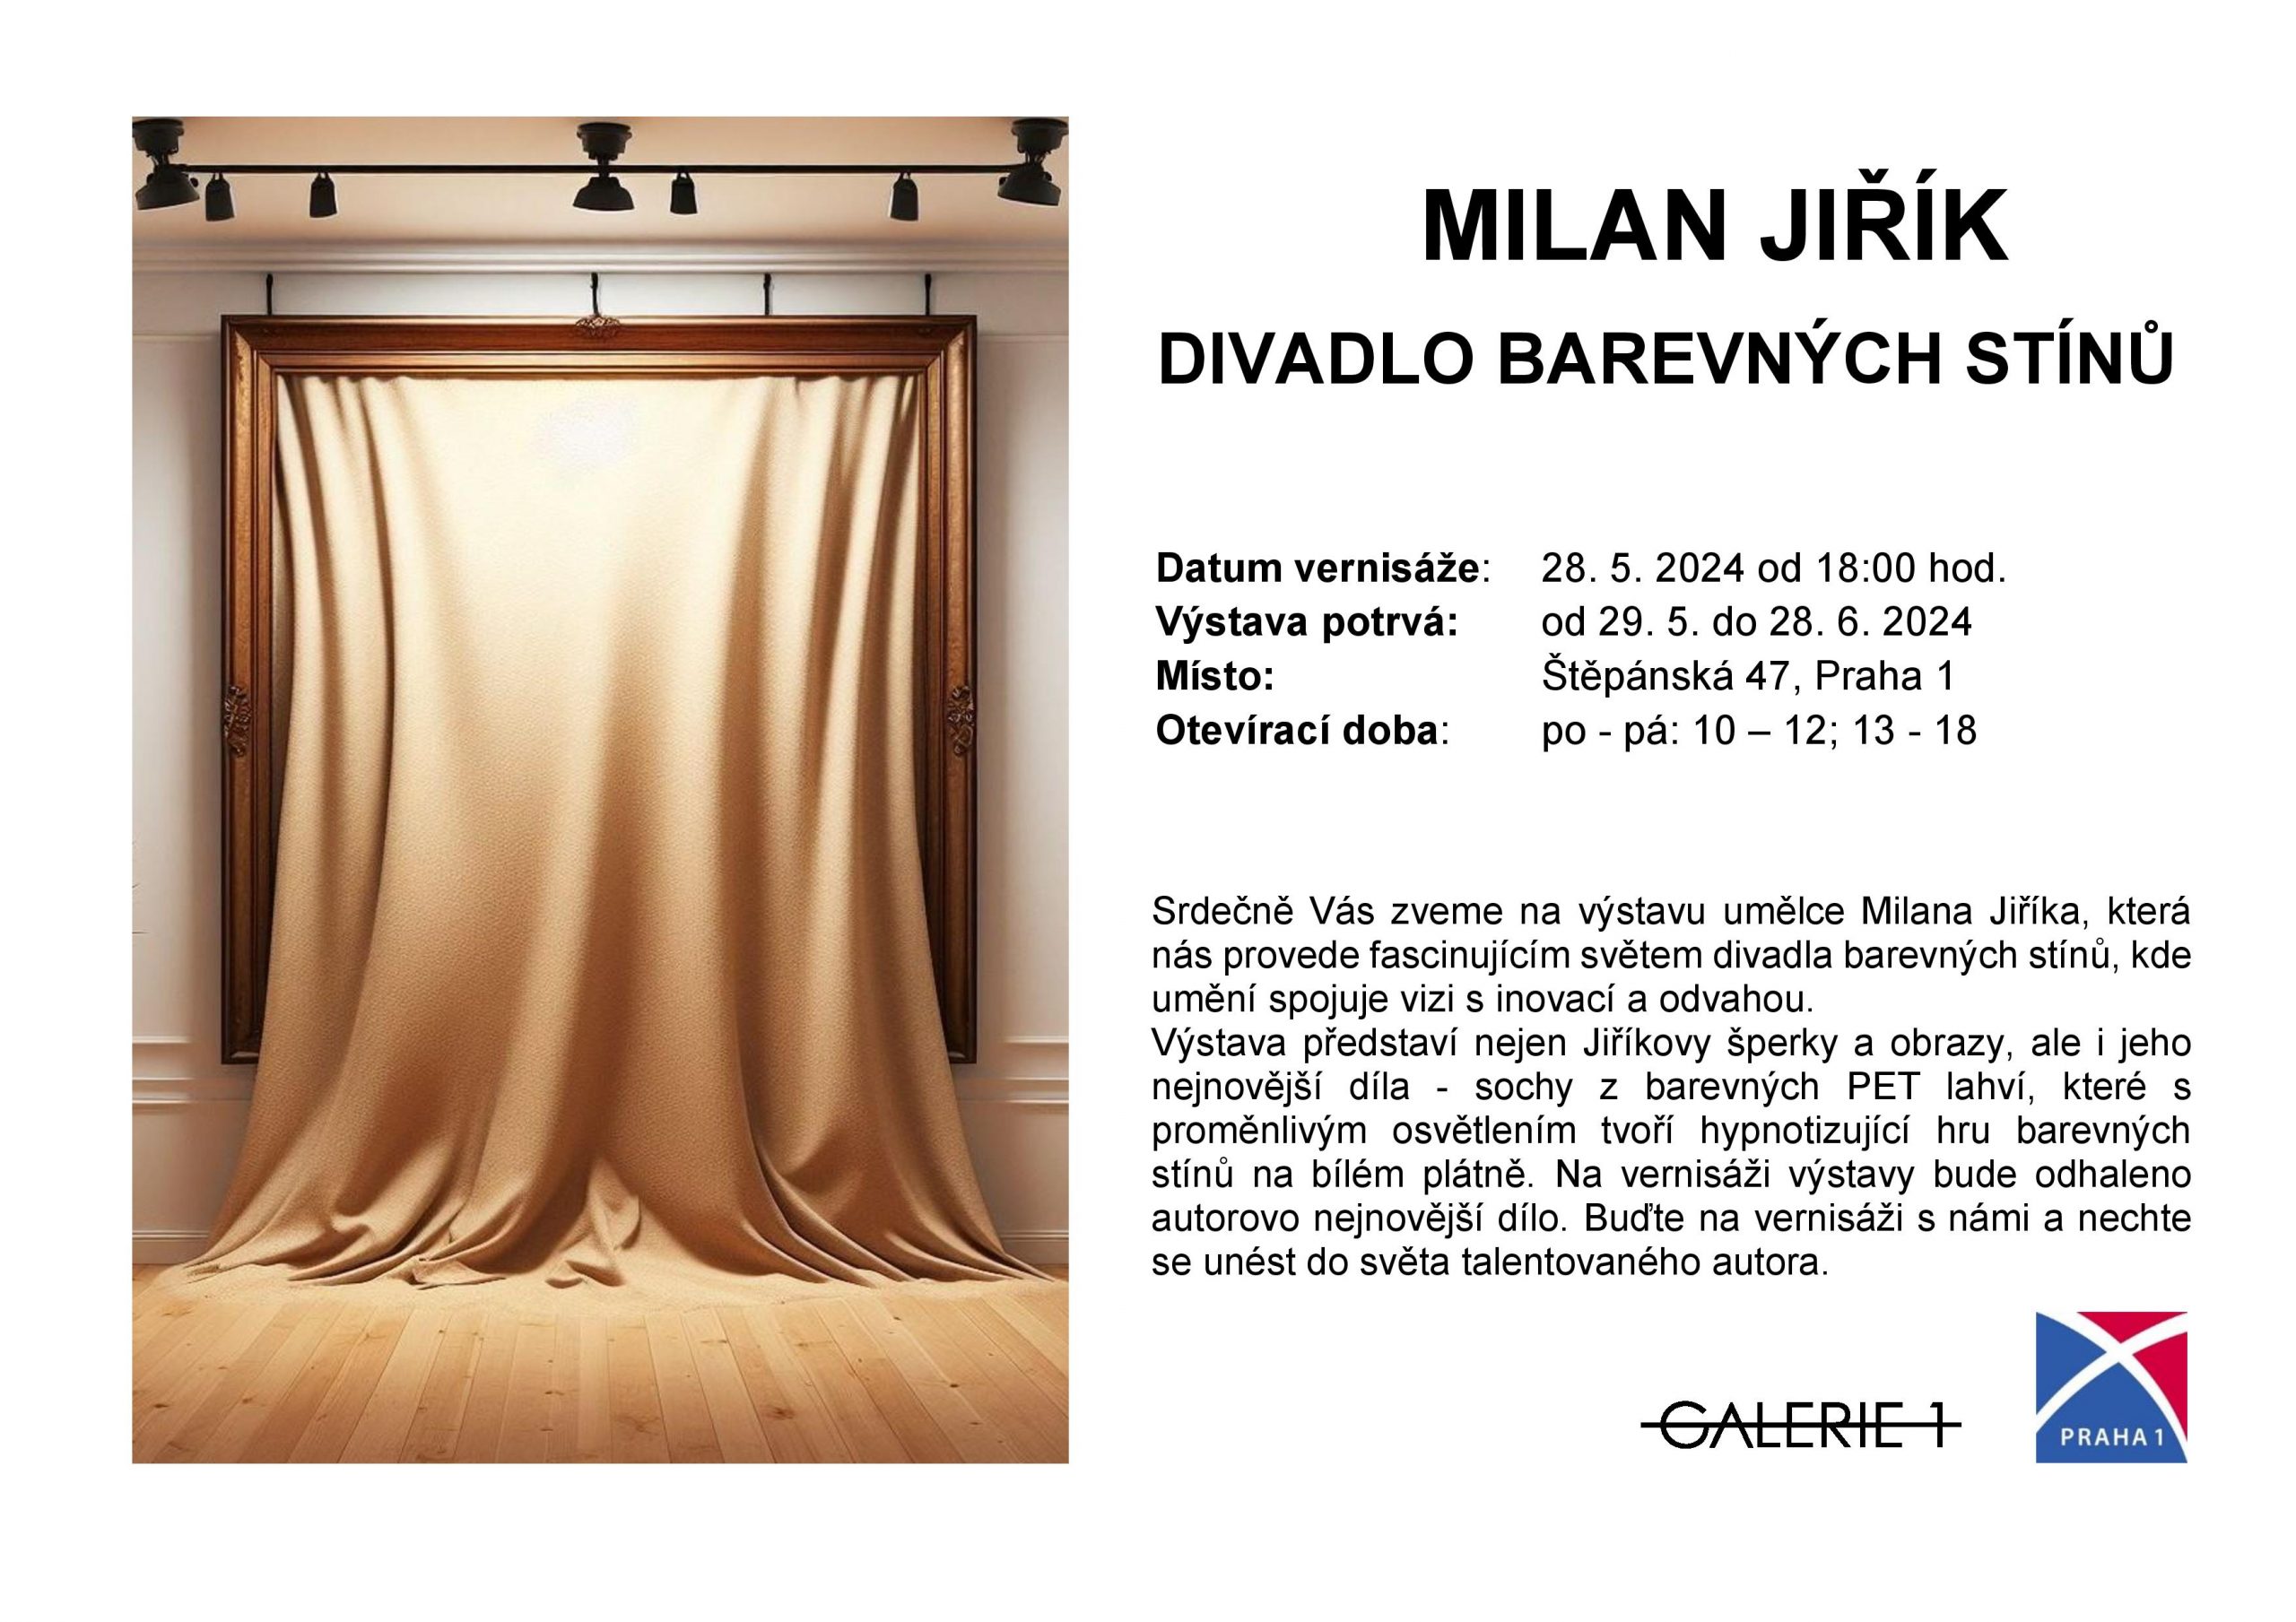 Vernisáž výstavy Milana Jiříka v Galerii 1